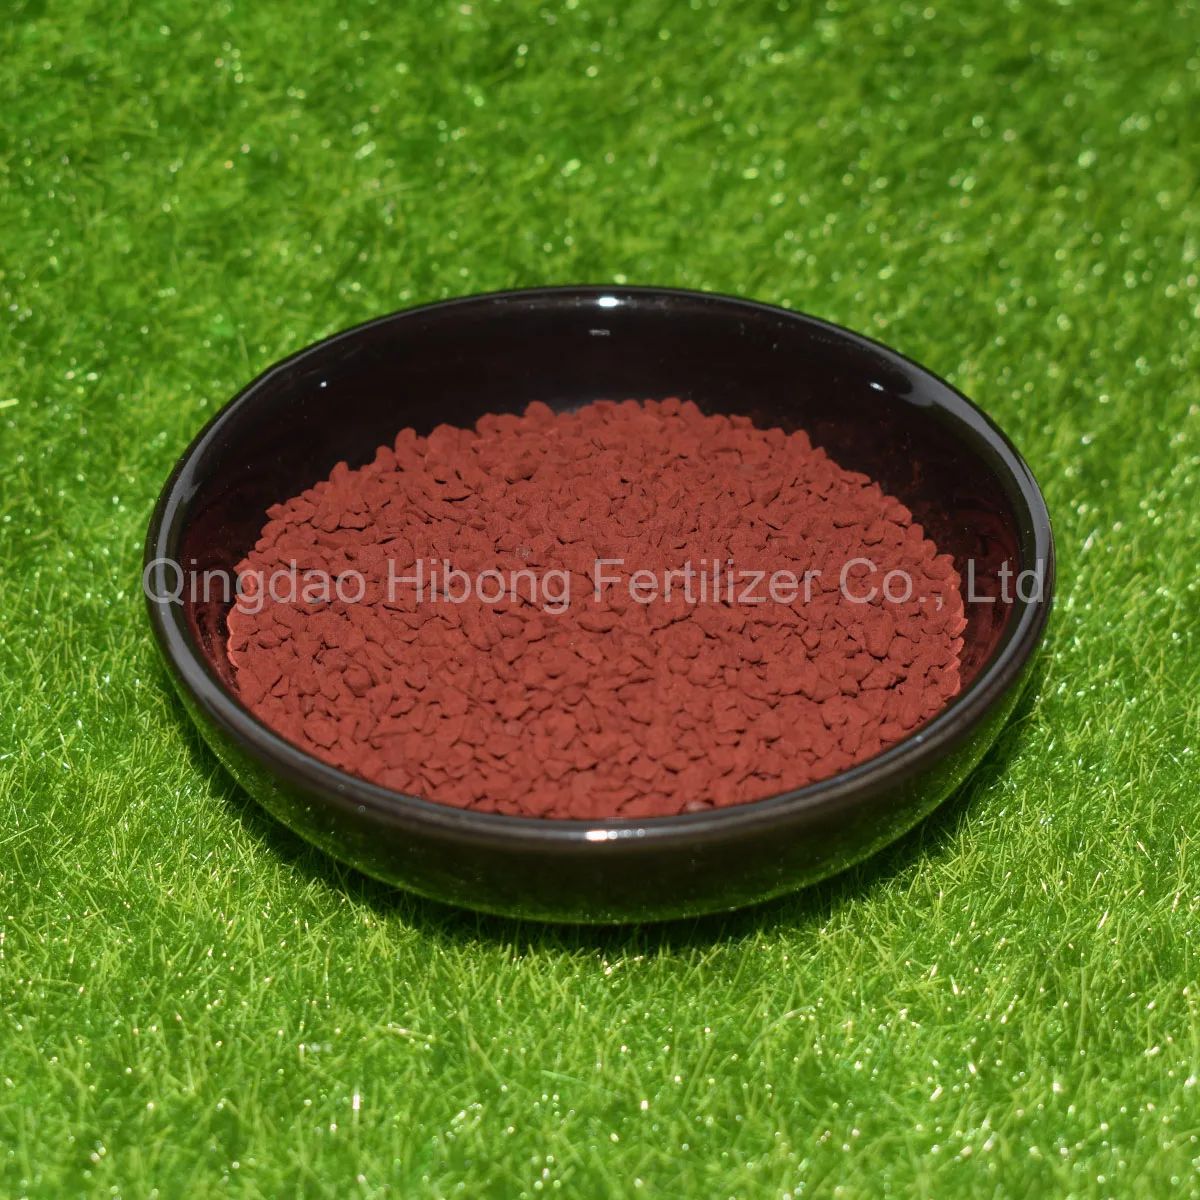 Top quality fe eddha (% 6) iron chelate fertilizer/iron chelate eddha/EDDHA Fe 6%